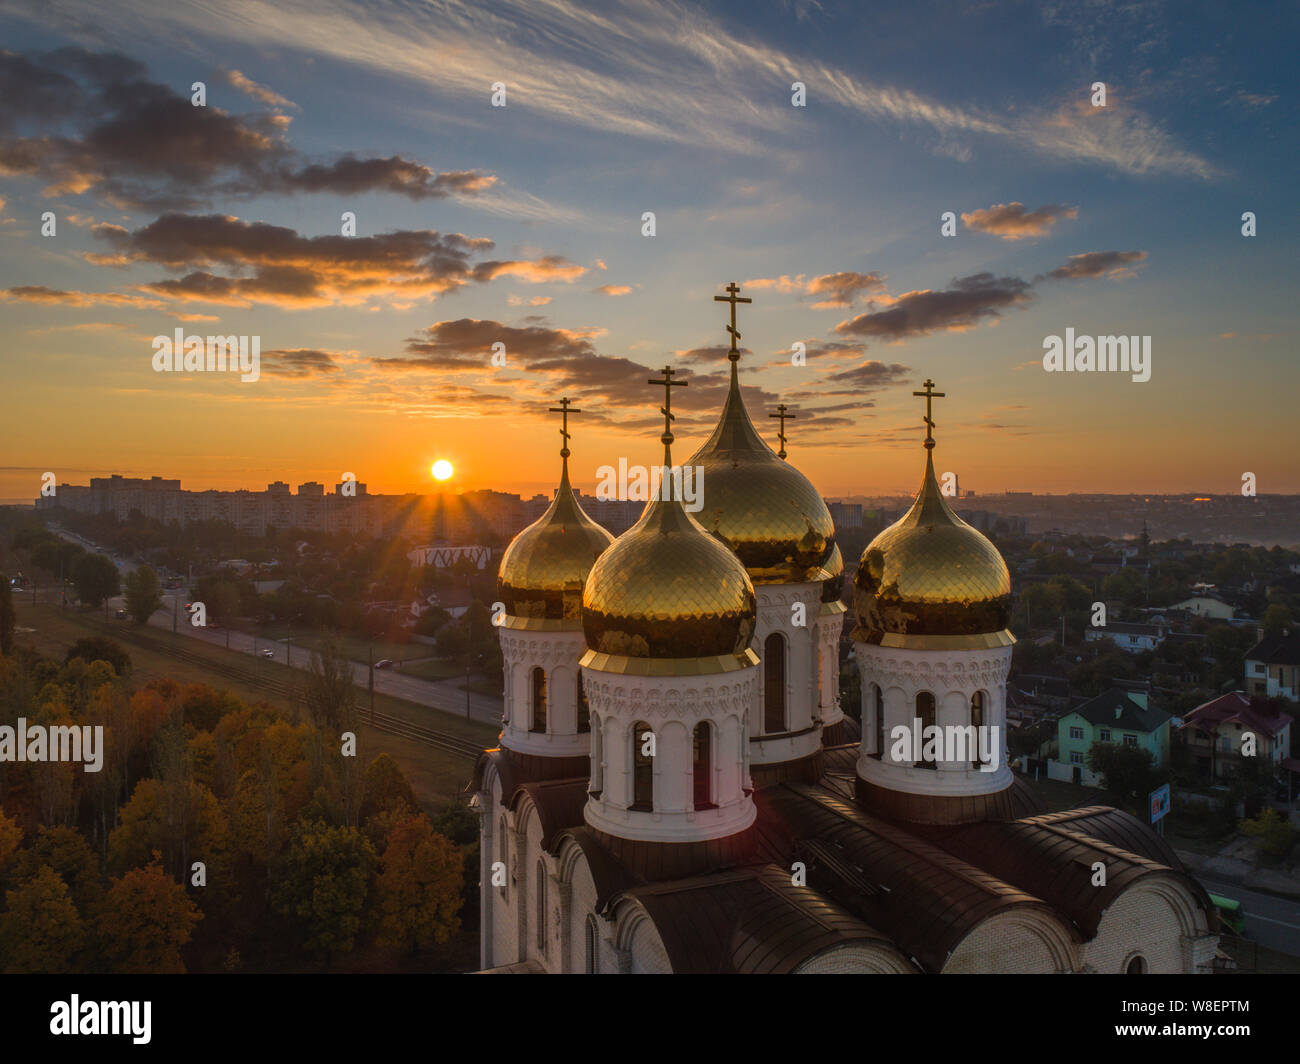 Dome der Orthodoxen Kirche, mit Blick auf die Kuppeln bei Sonnenaufgang. Orthodoxe Kirche in Charkow, Ukraine. Eine orthodoxe Kirche der Hl. Gottesmutter Matrona. Stockfoto